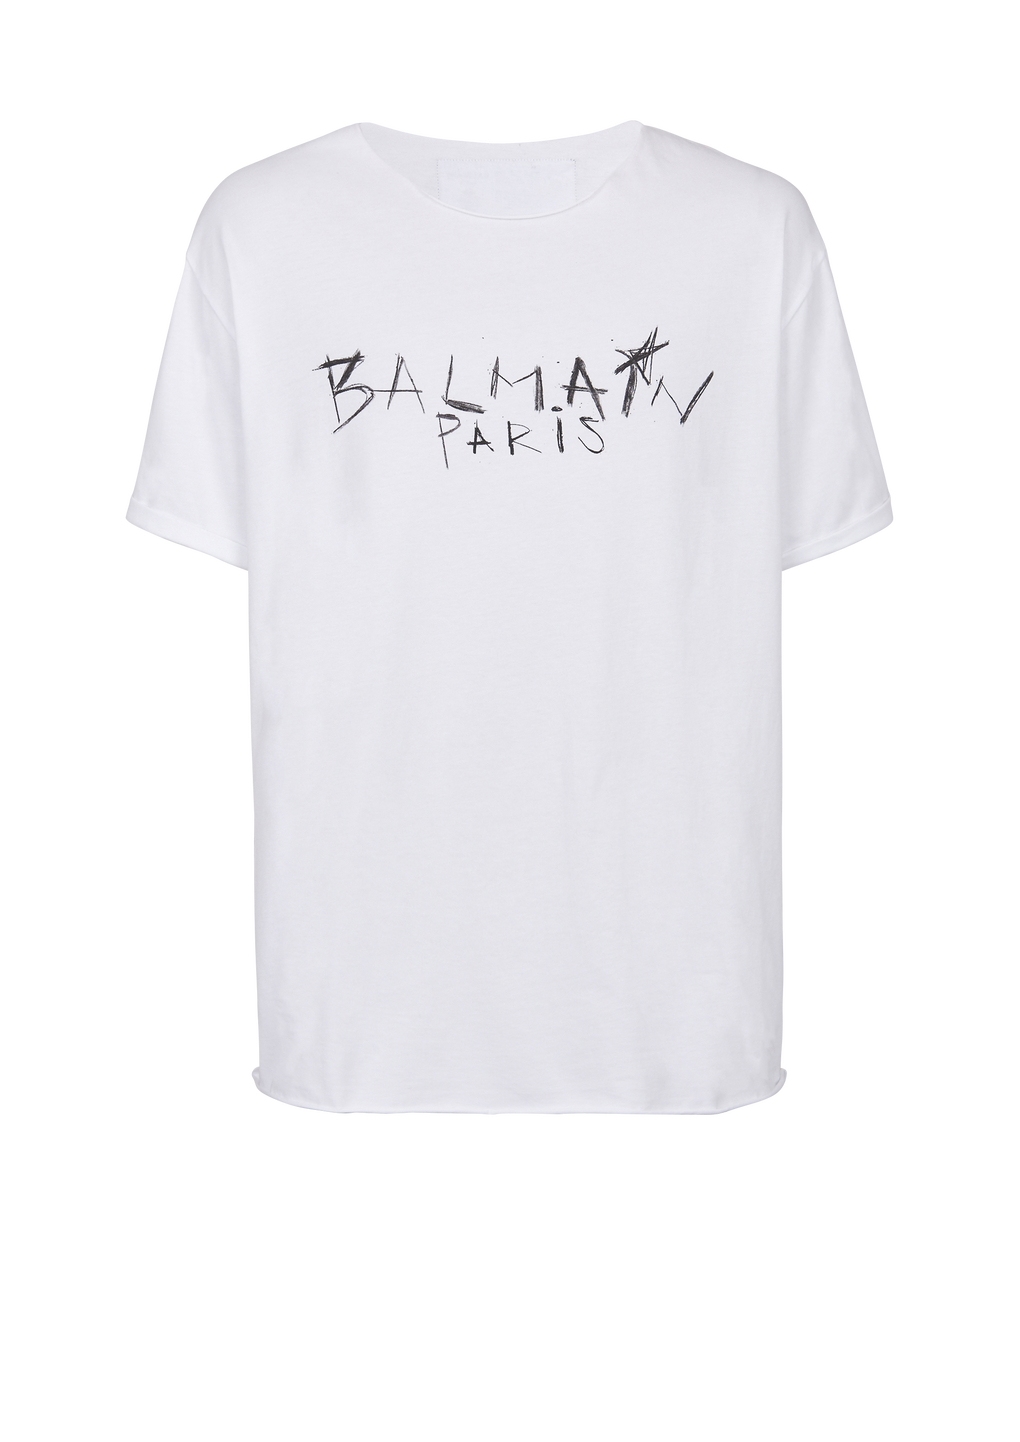 Camiseta de algodón con estampado grafiti del logotipo Balmain Paris, blanco, hi-res